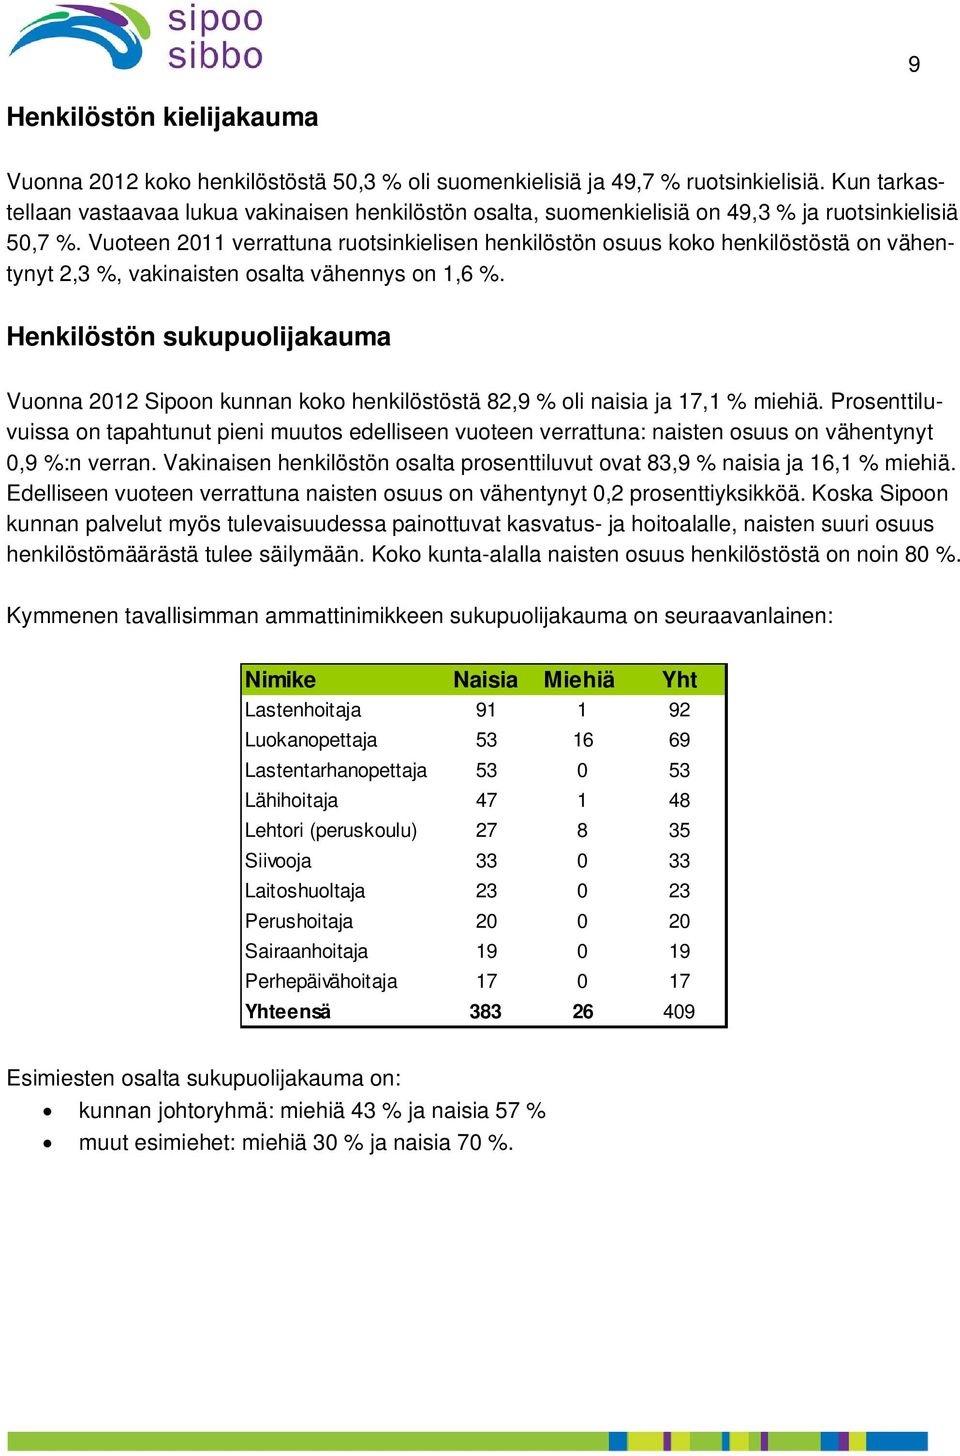 Vuoteen 2011 verrattuna ruotsinkielisen henkilöstön osuus koko henkilöstöstä on vähentynyt 2,3 %, vakinaisten osalta vähennys on 1,6 %.